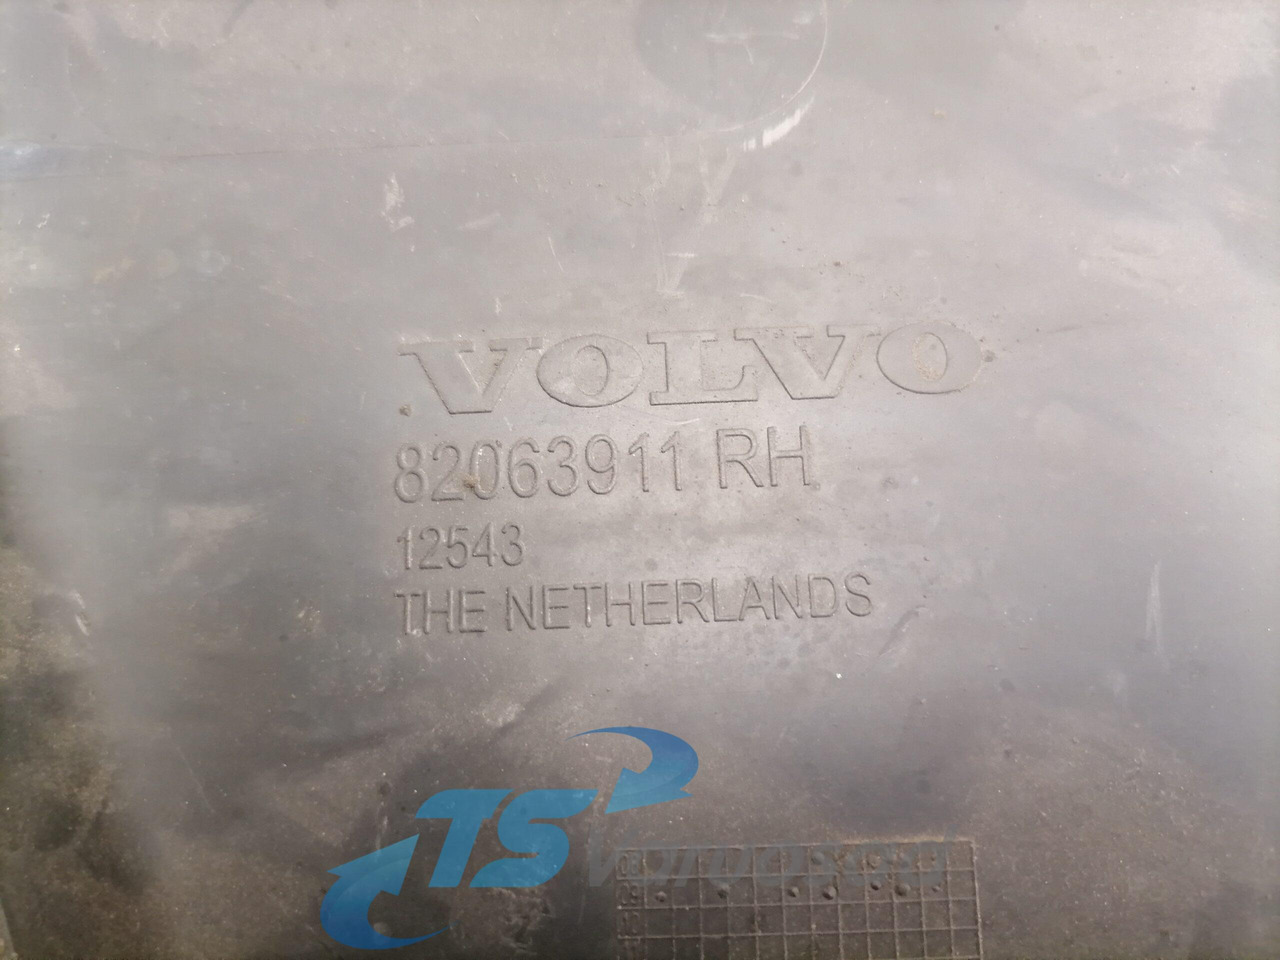 Аэродинамика/ Спойлеры для Грузовиков Volvo Plastic 82063911: фото 3